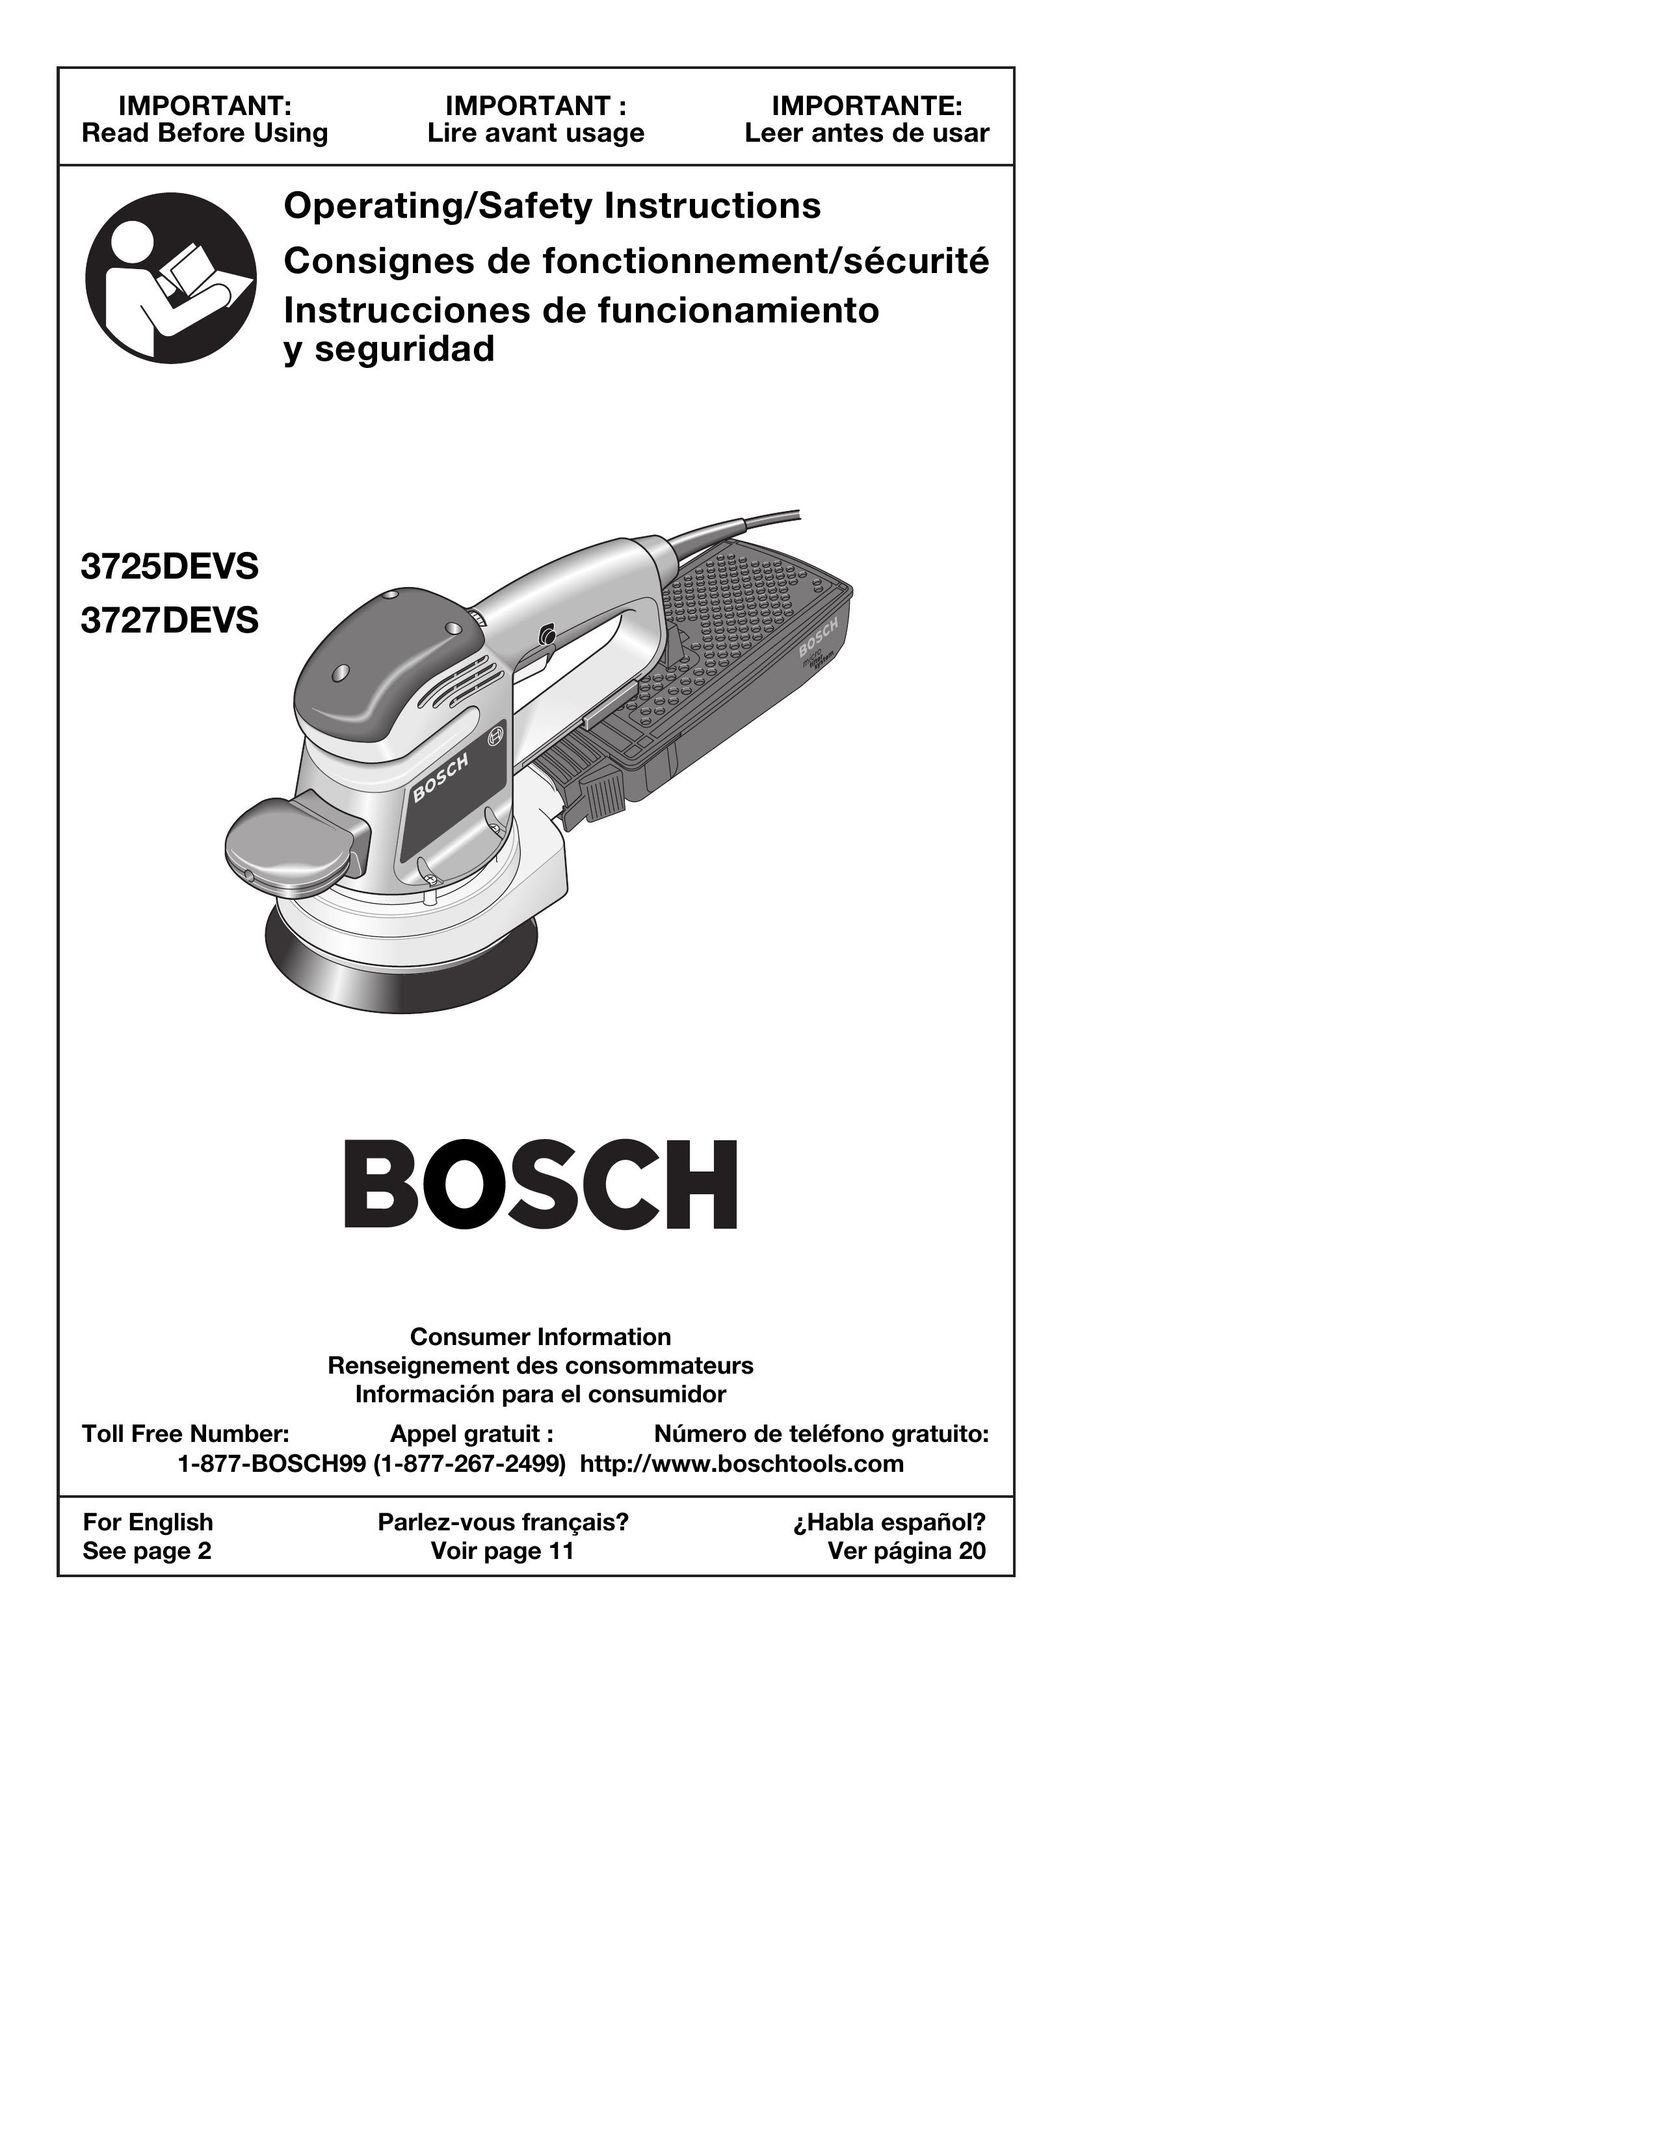 Bosch Power Tools 3727DEVS Sander User Manual